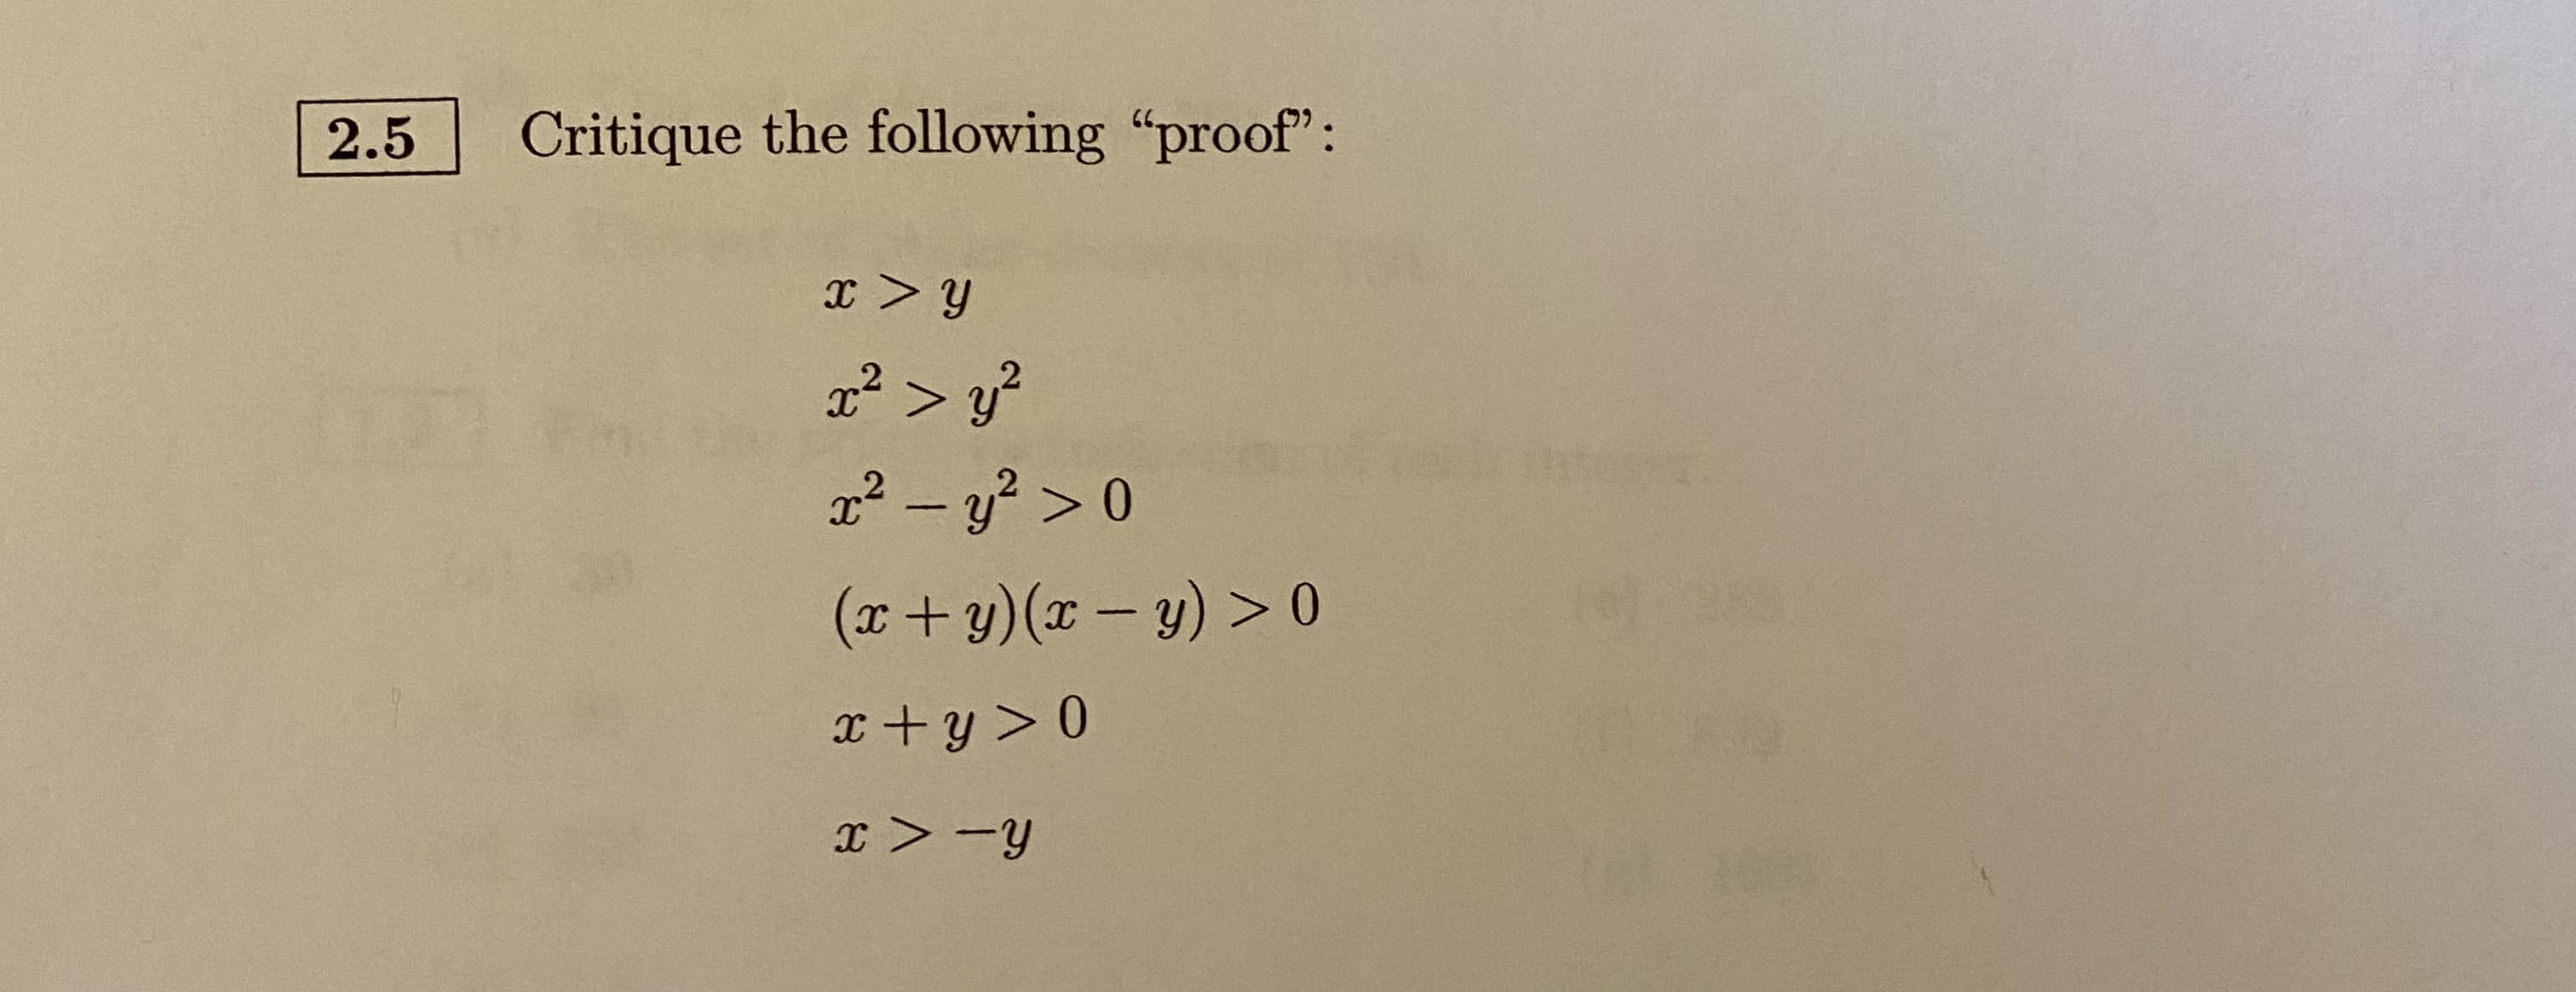 2.5
Critique the following "proof":
x² > y?
2² - y? > 0
(x+y)(x – y) > 0
x+y > 0
x > -y
